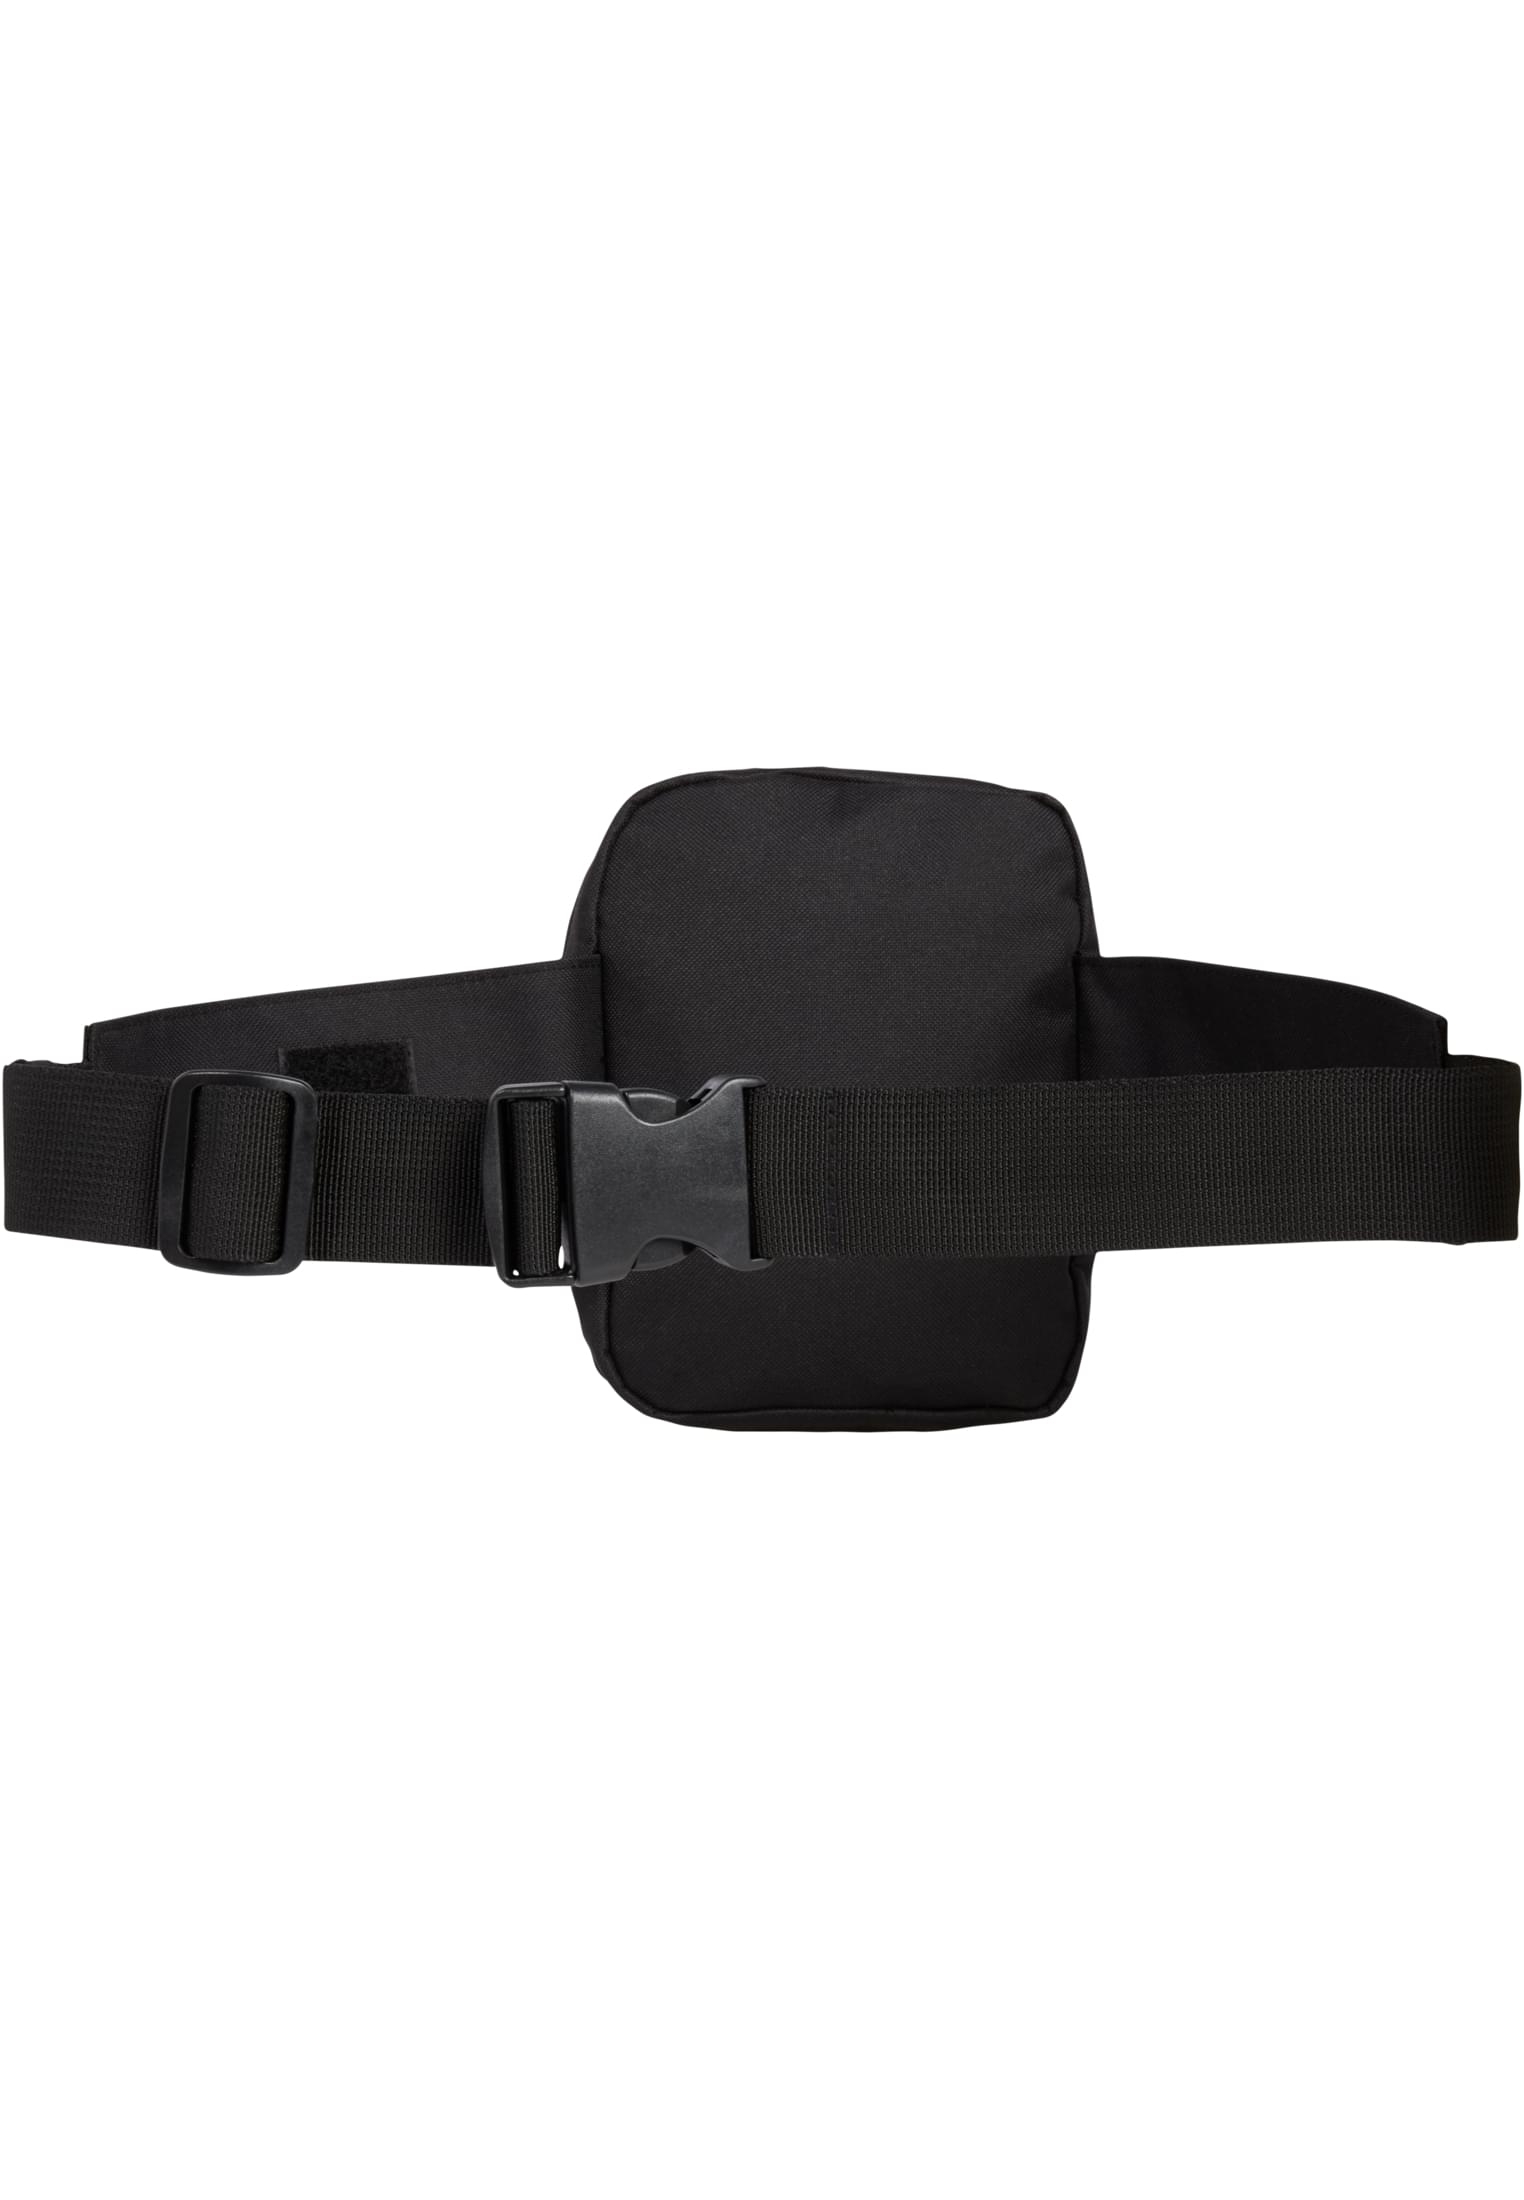 Taschen waistbeltbag Allround in Farbe black